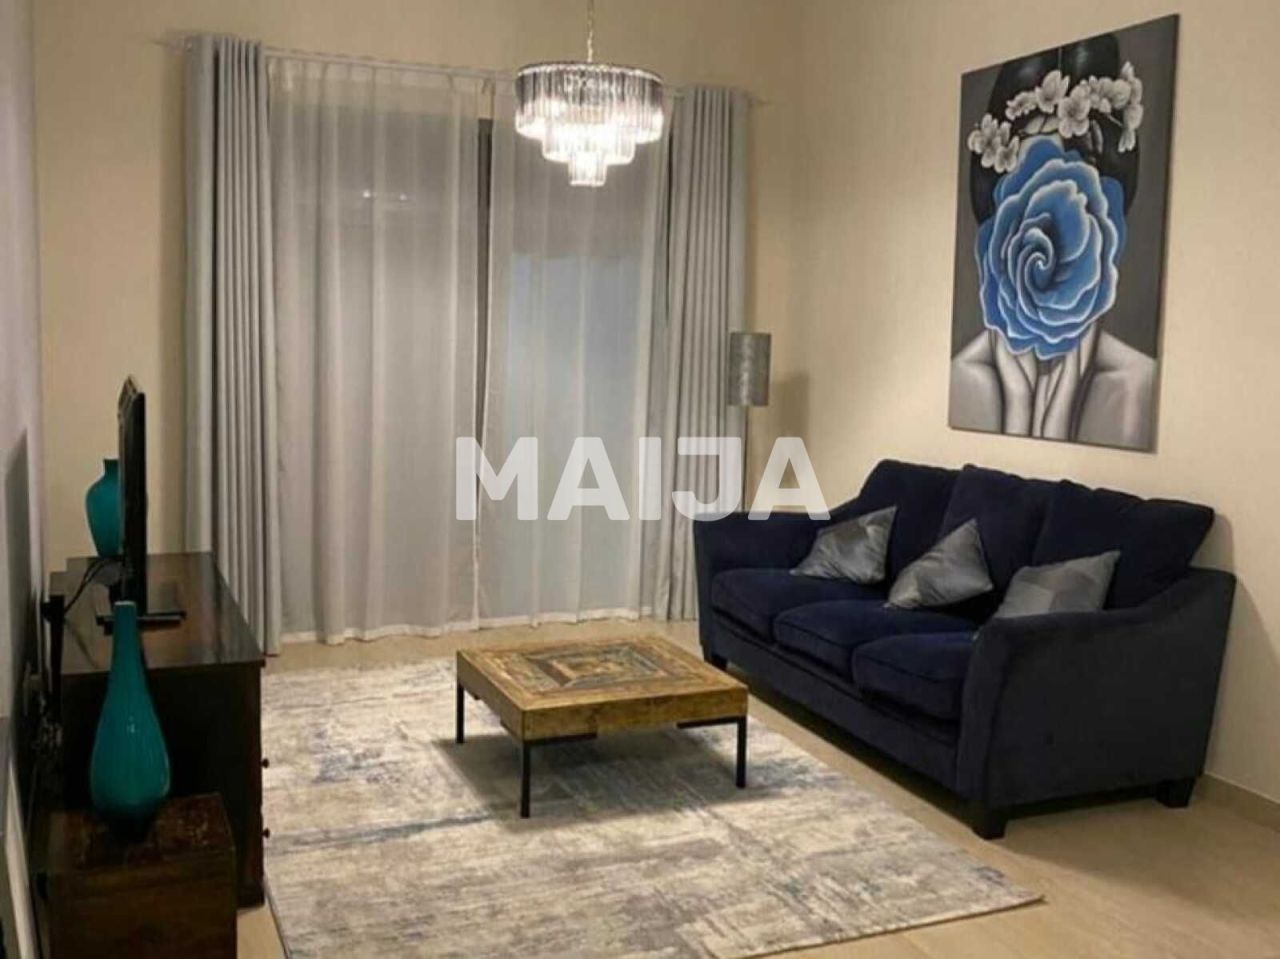 Apartment in Dubai, UAE, 80.53 sq.m - picture 1